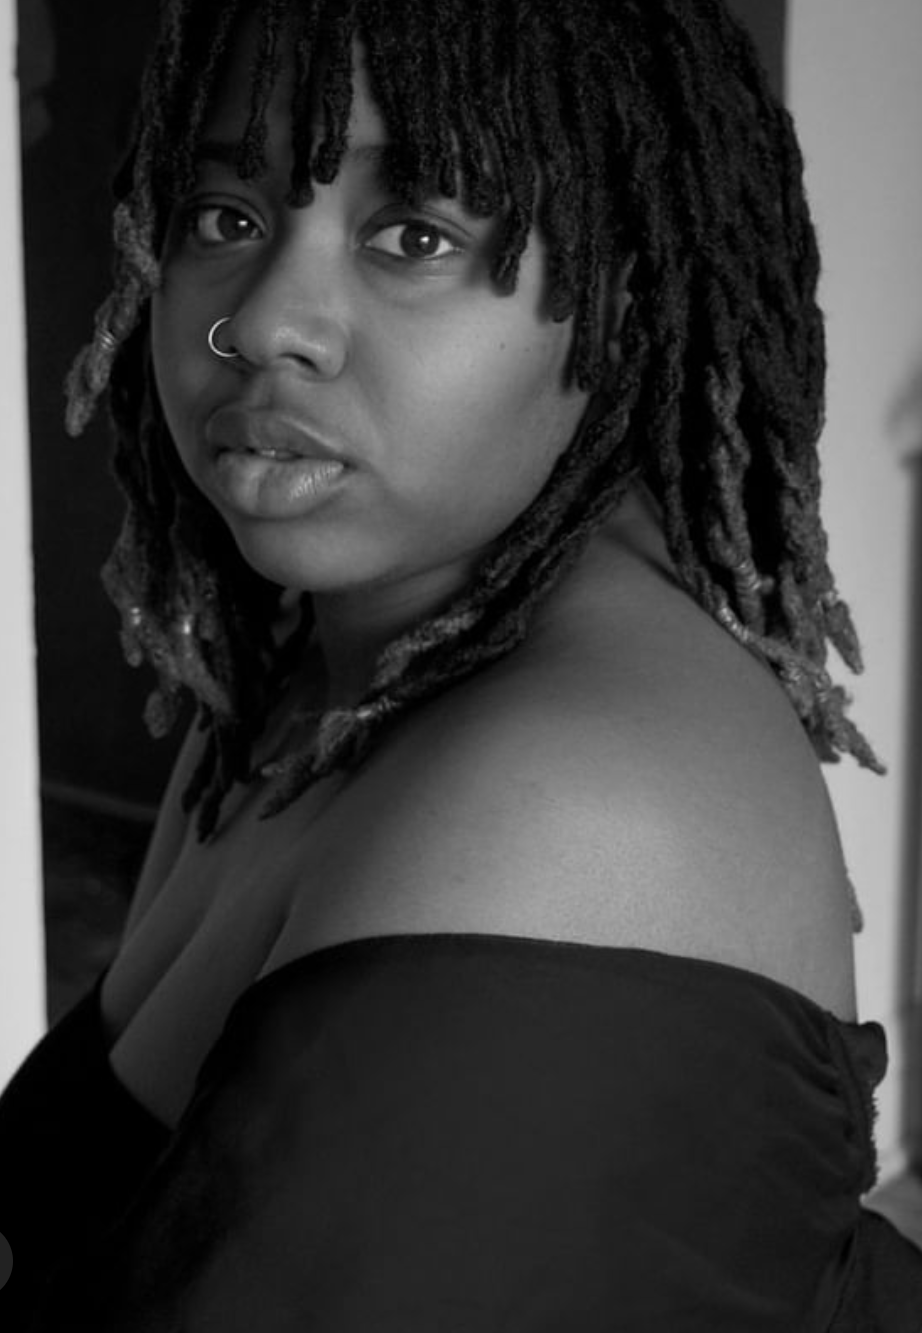 portrait photo noir et blanc de 𝐆𝐚𝐛𝐫𝐢𝐞𝐥𝐥𝐞 femme noire cheveux aux épaule en locks, un chandail noir laissant les épaules nues.